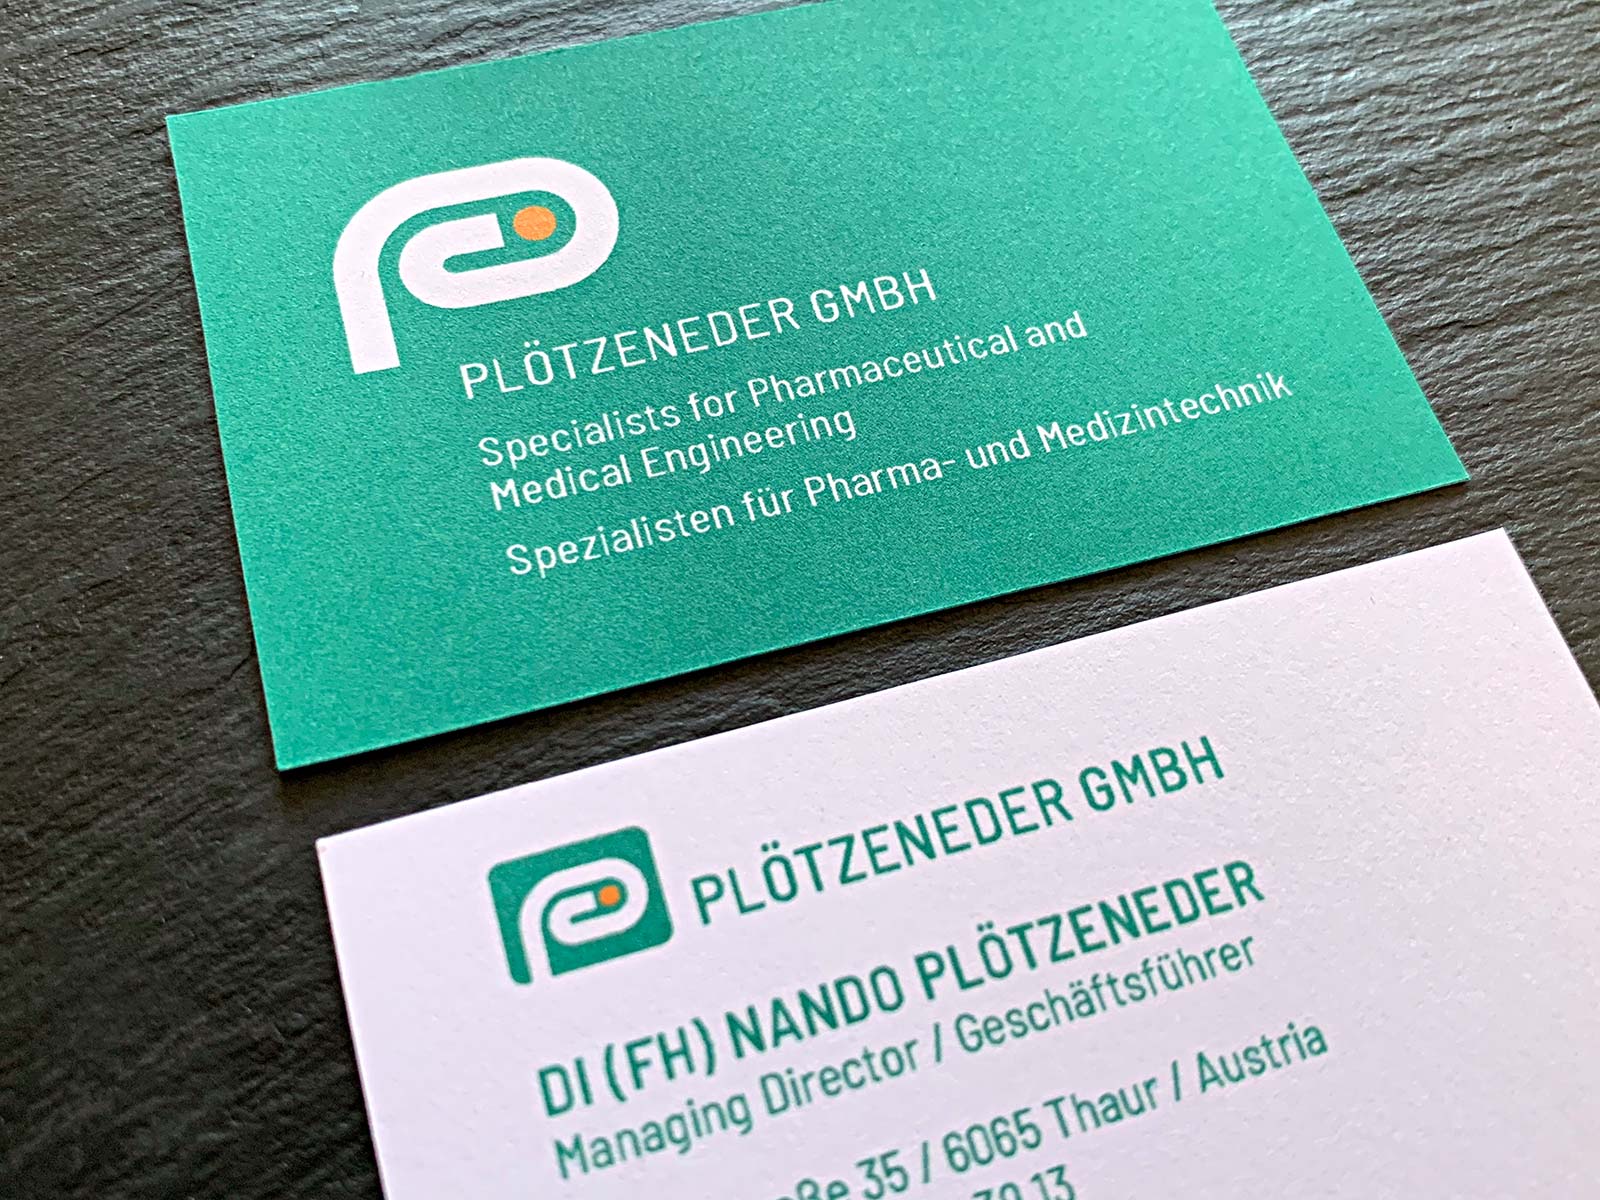 Visitenkarte für die Plötzeneder GmbH | © fein fein